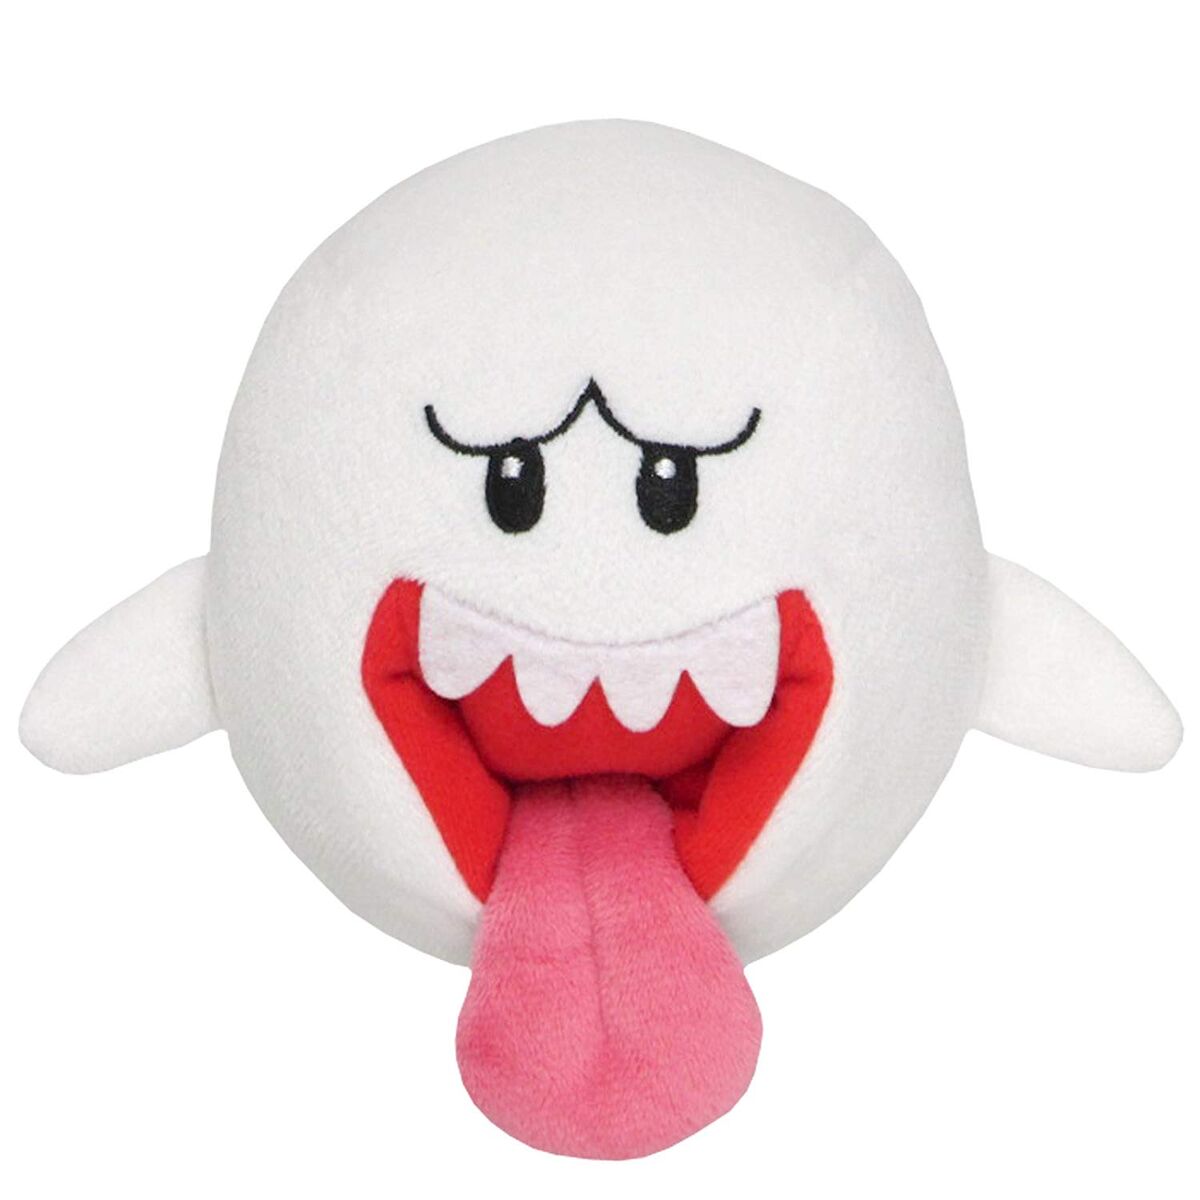 Boo | Super Mario Plush Wiki | Fandom